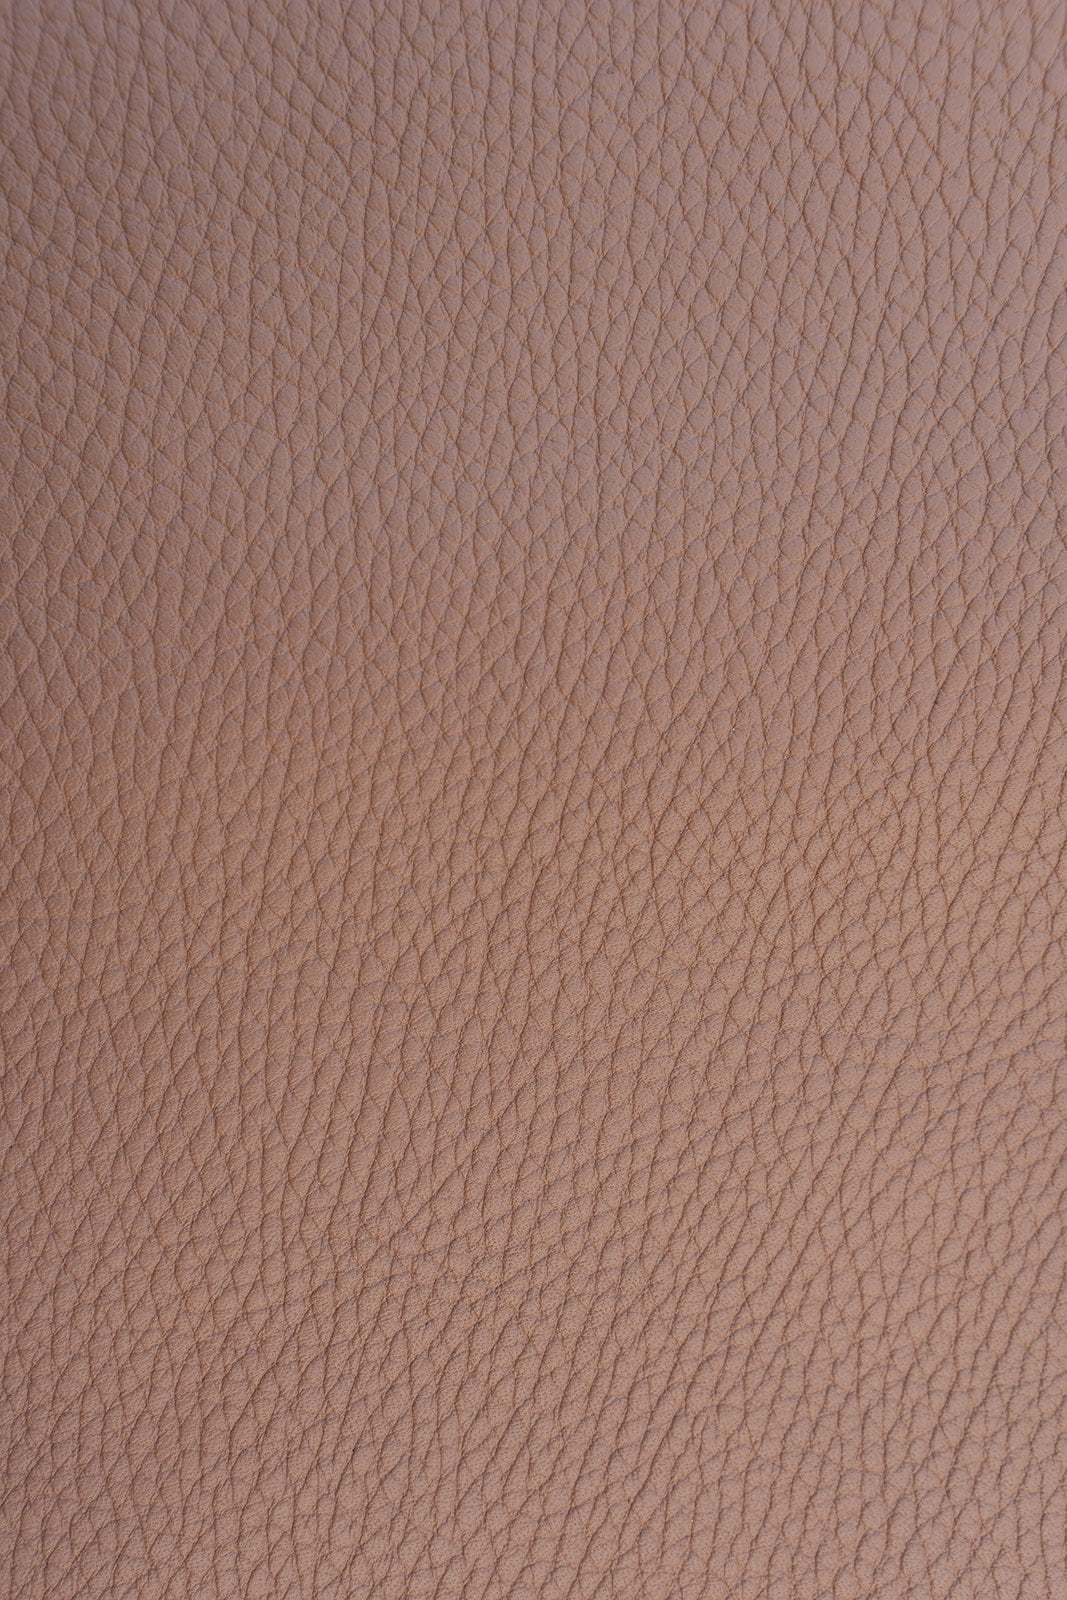 JL clutch bag leather - Warm sand